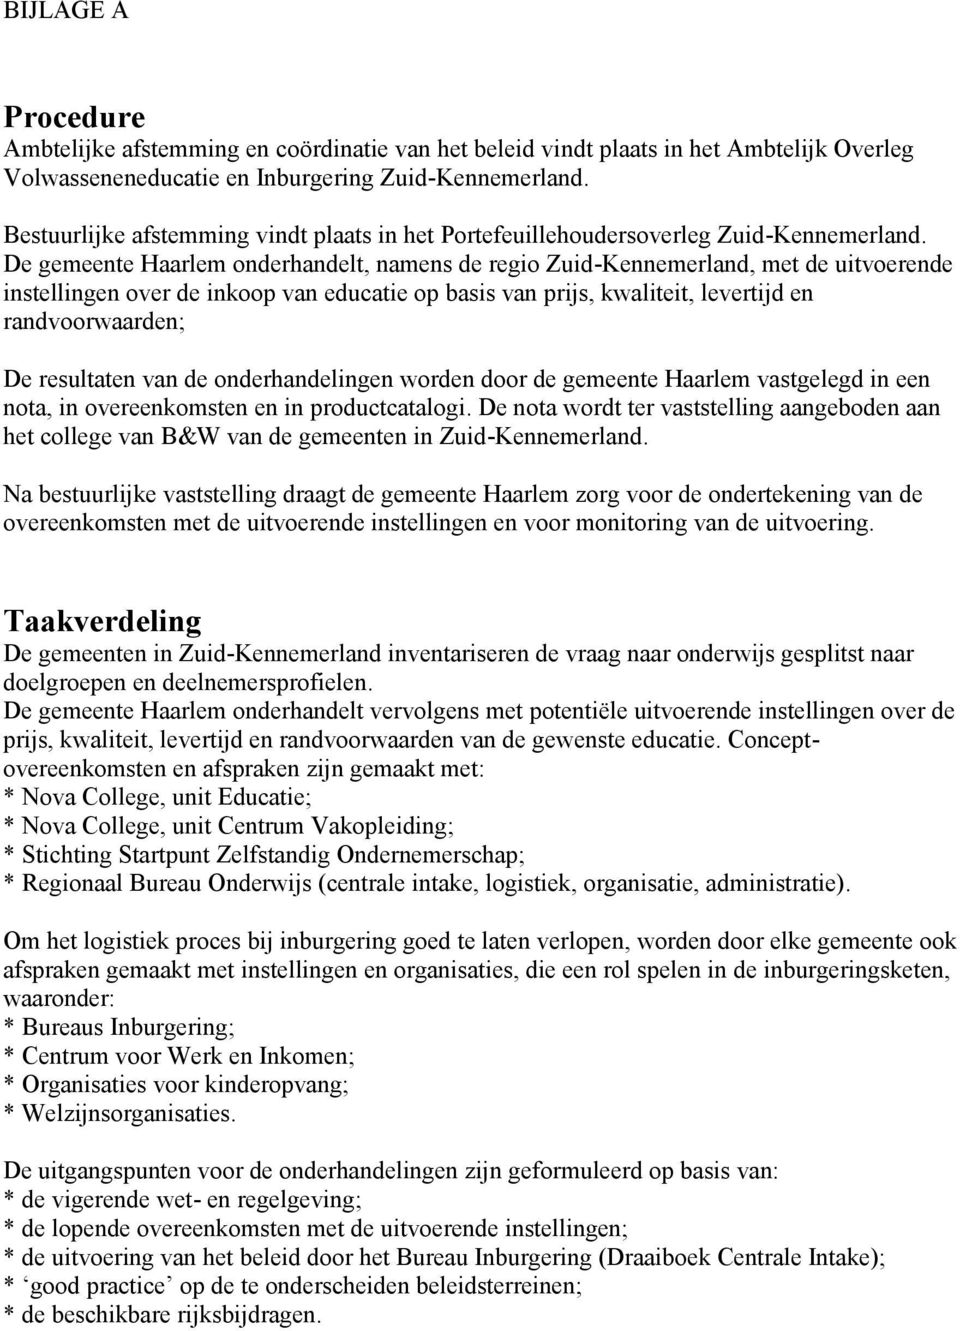 De gemeente Haarlem onderhandelt, namens de regio Zuid-Kennemerland, met de uitvoerende instellingen over de inkoop van educatie op basis van prijs, kwaliteit, levertijd en randvoorwaarden; De